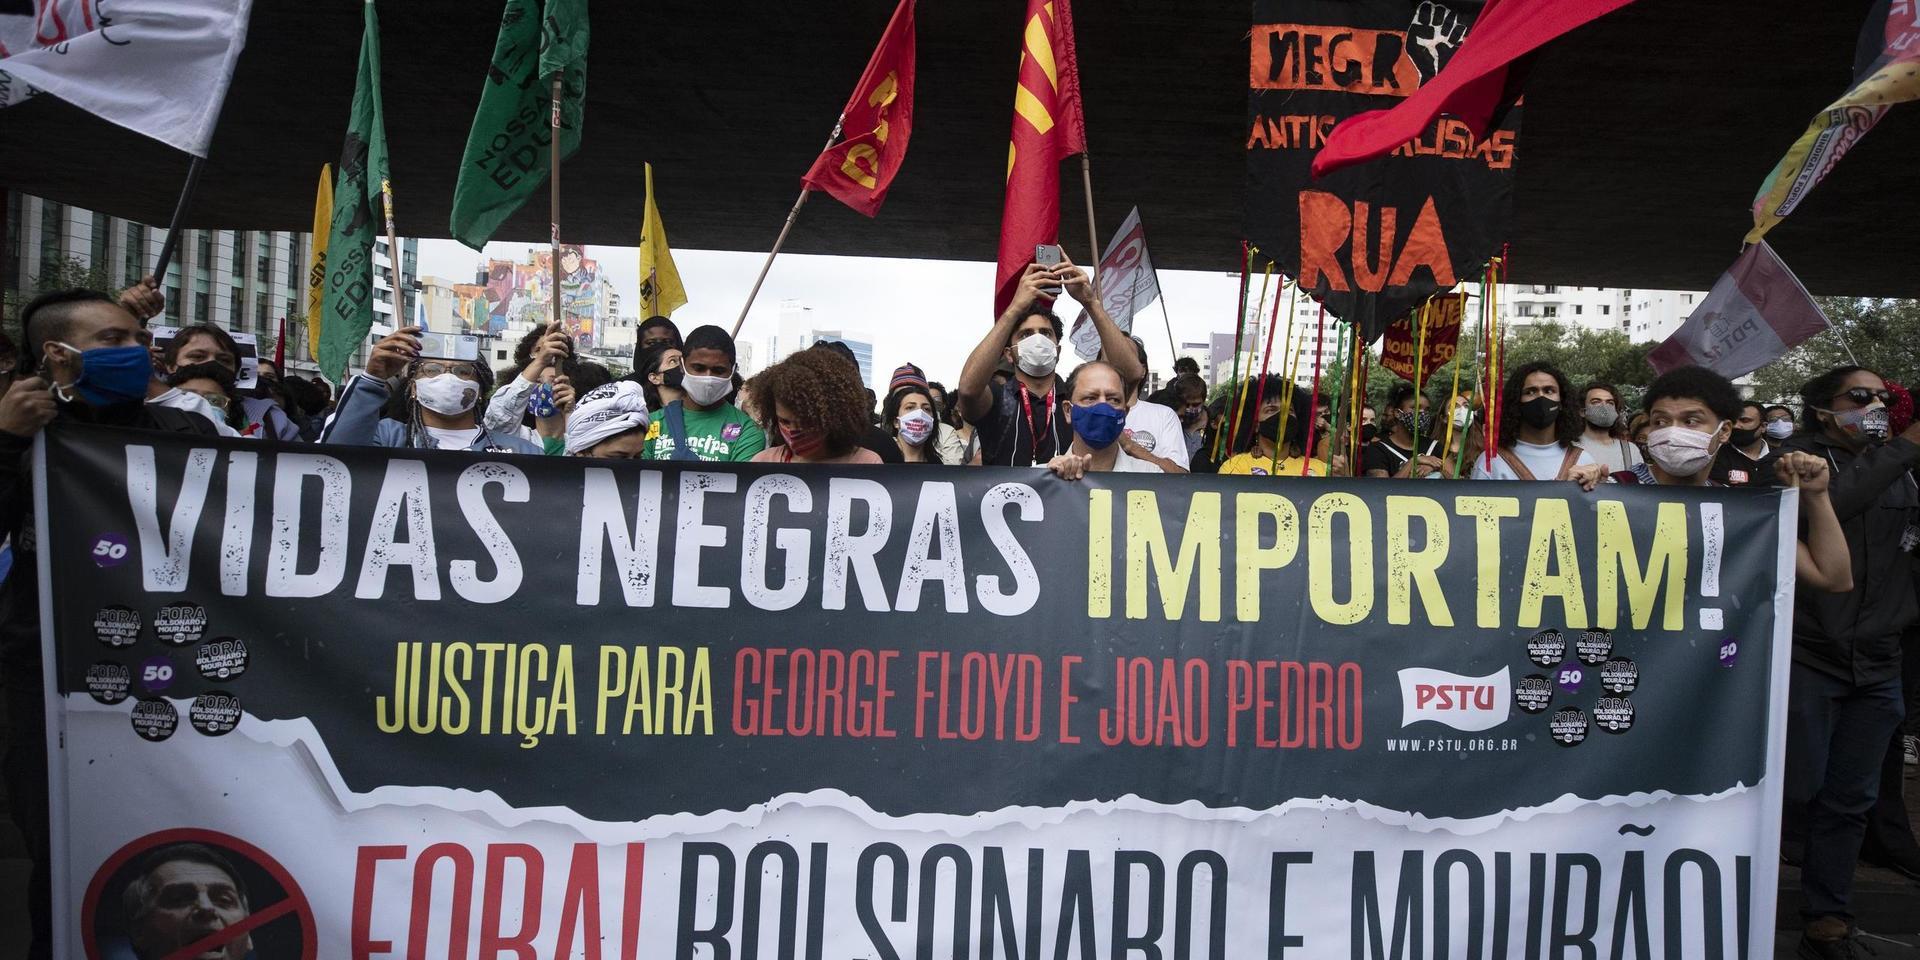 Demonstrationer mot rasism i brasilianska Sao Paulo dagen efter en uppmärksammad dödsmisshandel.